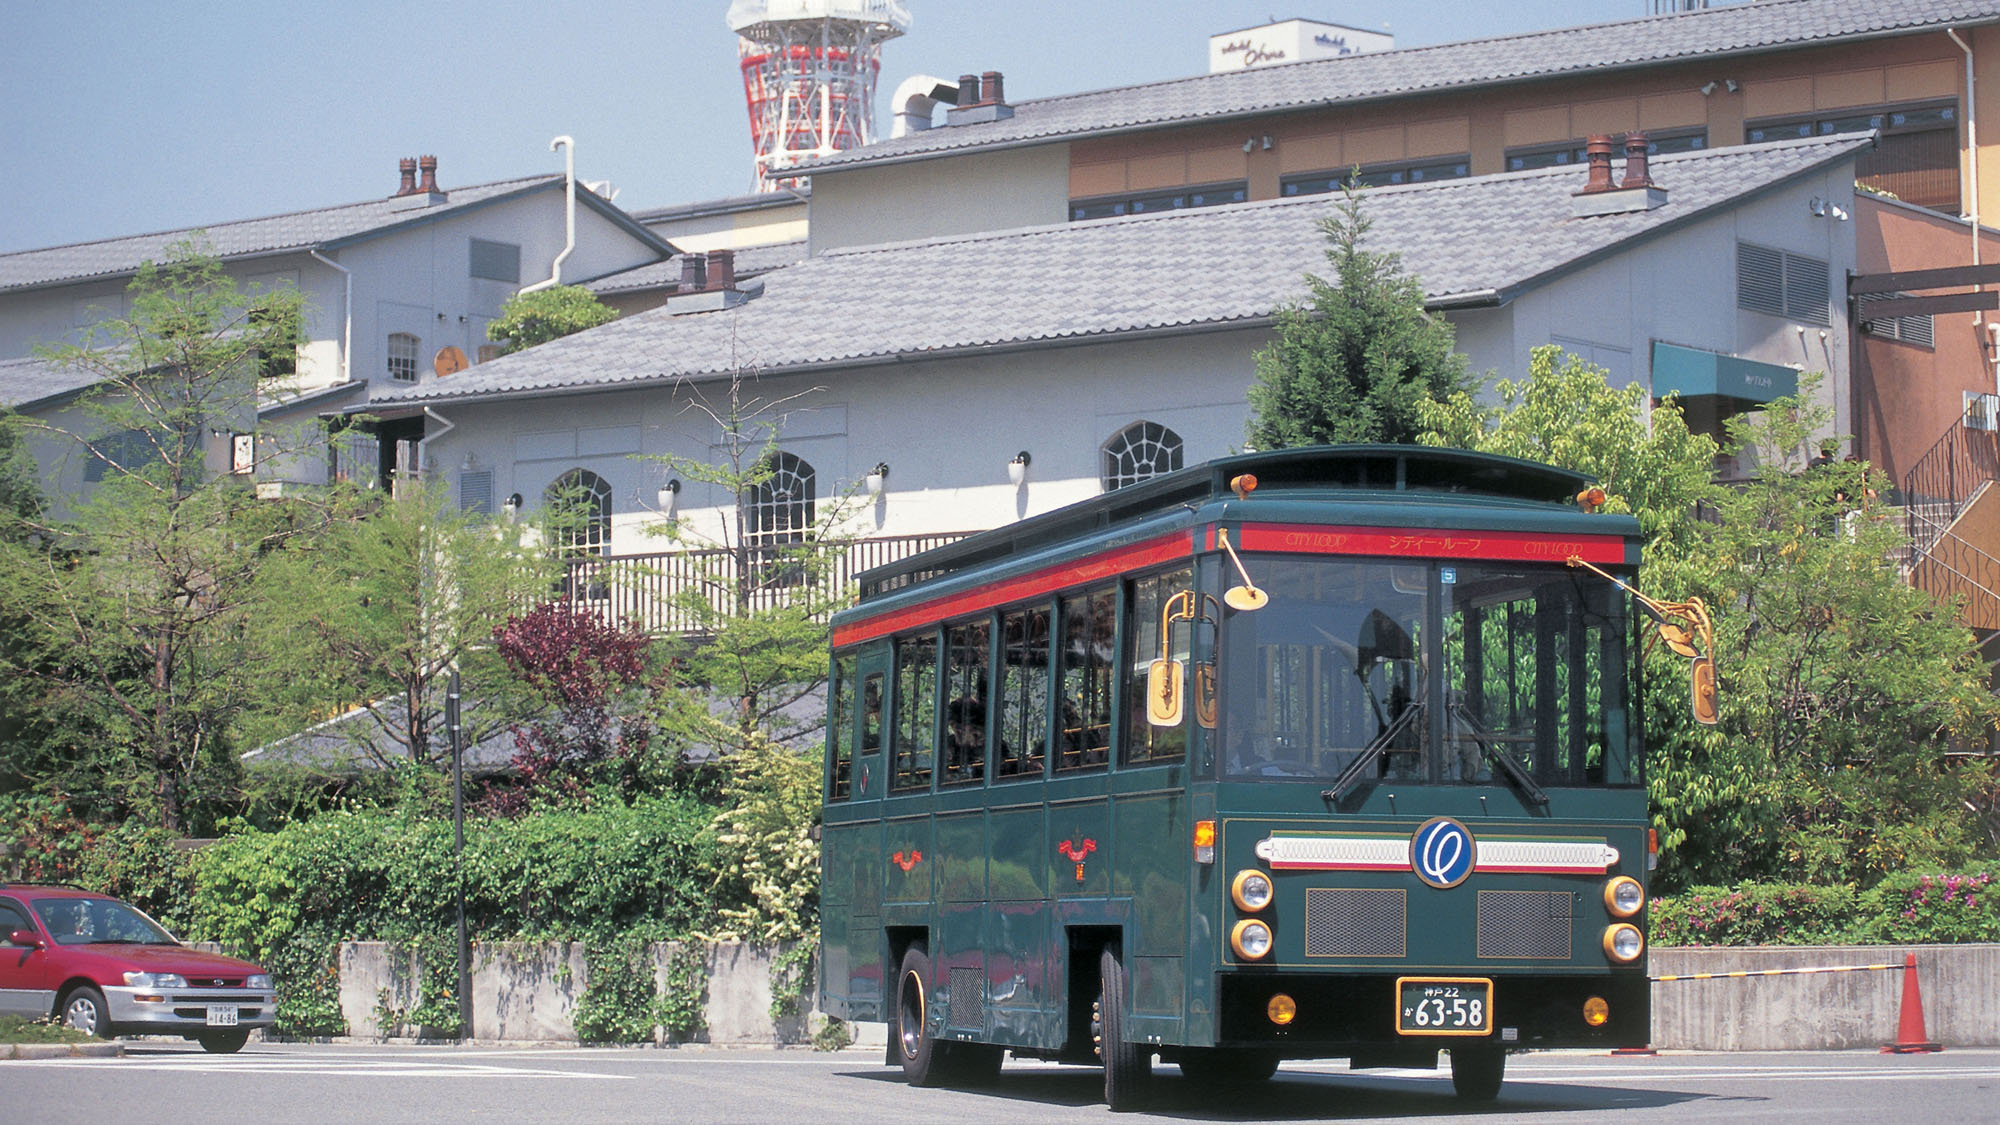 【シティー・ループバス】神戸エリアの主要スポットを巡るループバス